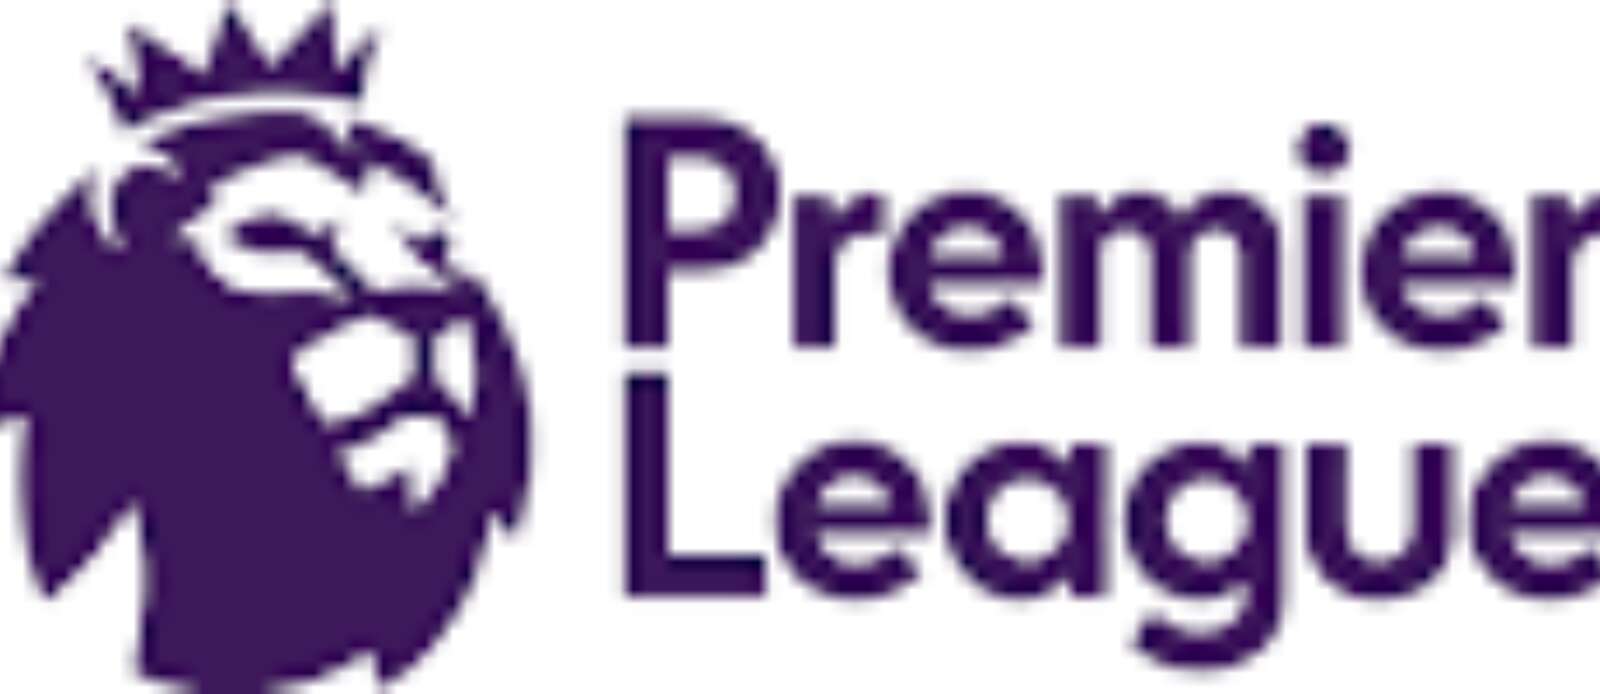 Premier League Placement Programme Header Image.